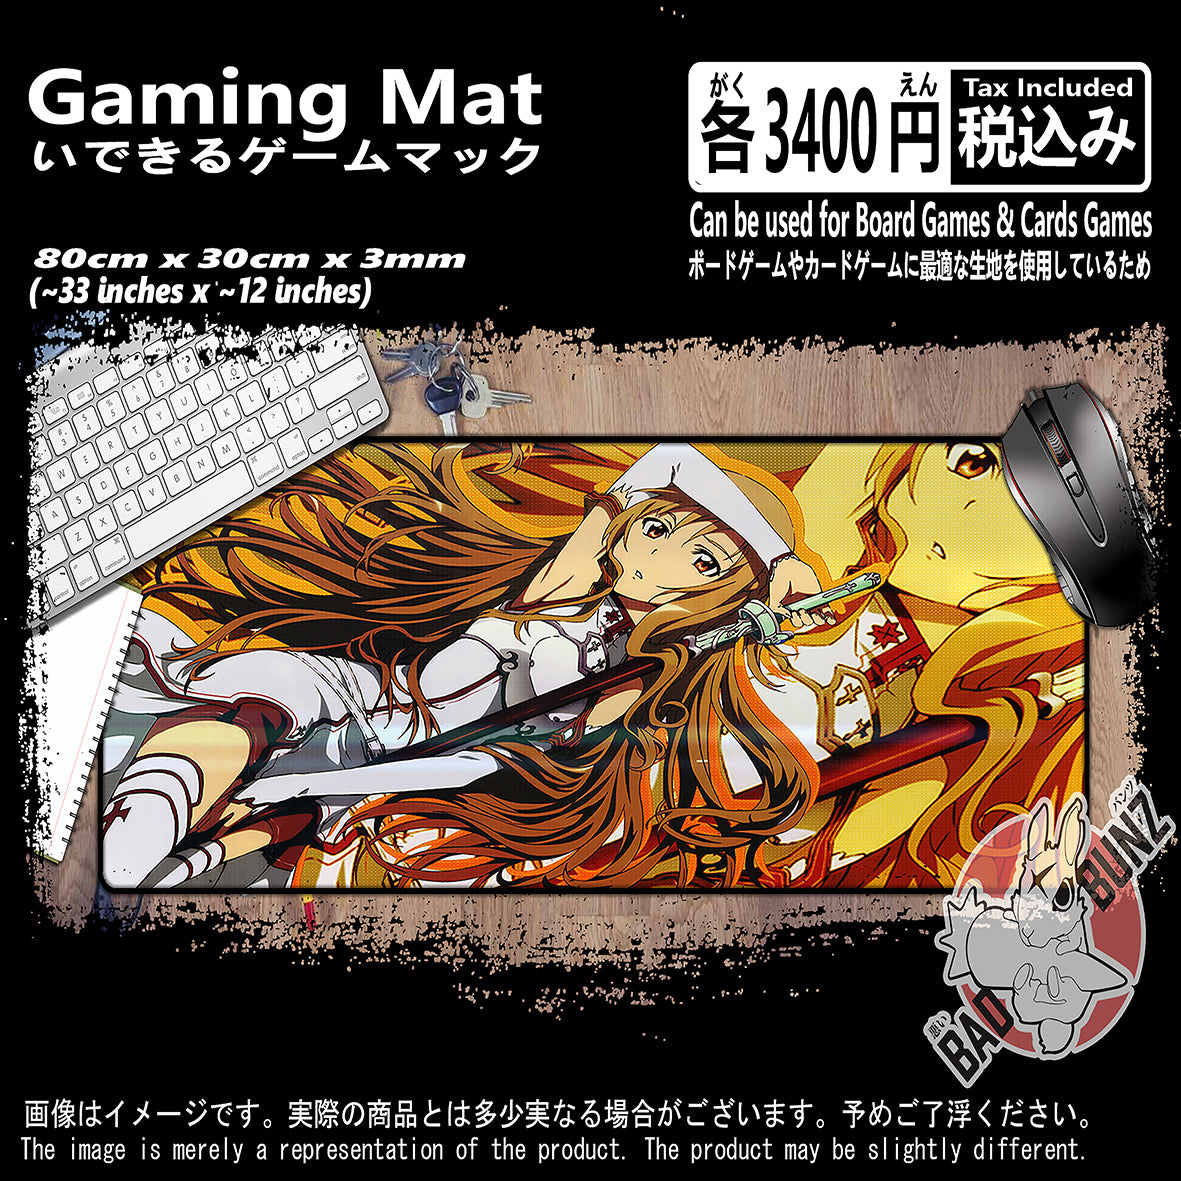 (AN-SAO-01) Sword Art Online Anime 800mm x 300mm Gaming Play Mat